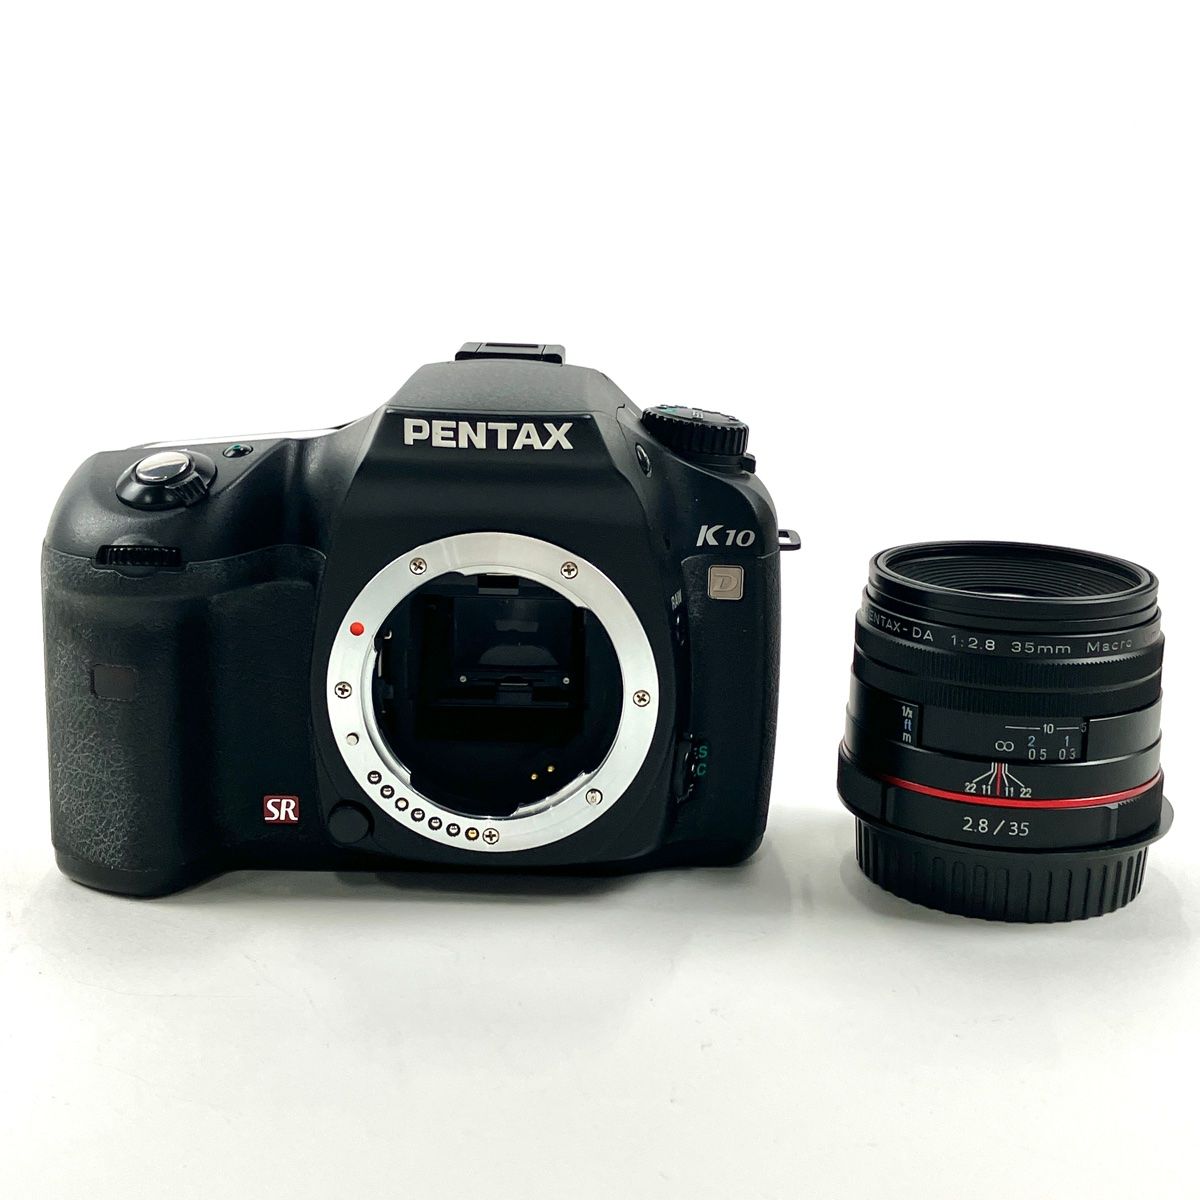 デジタル一眼レフカメラ PENTAX K10D